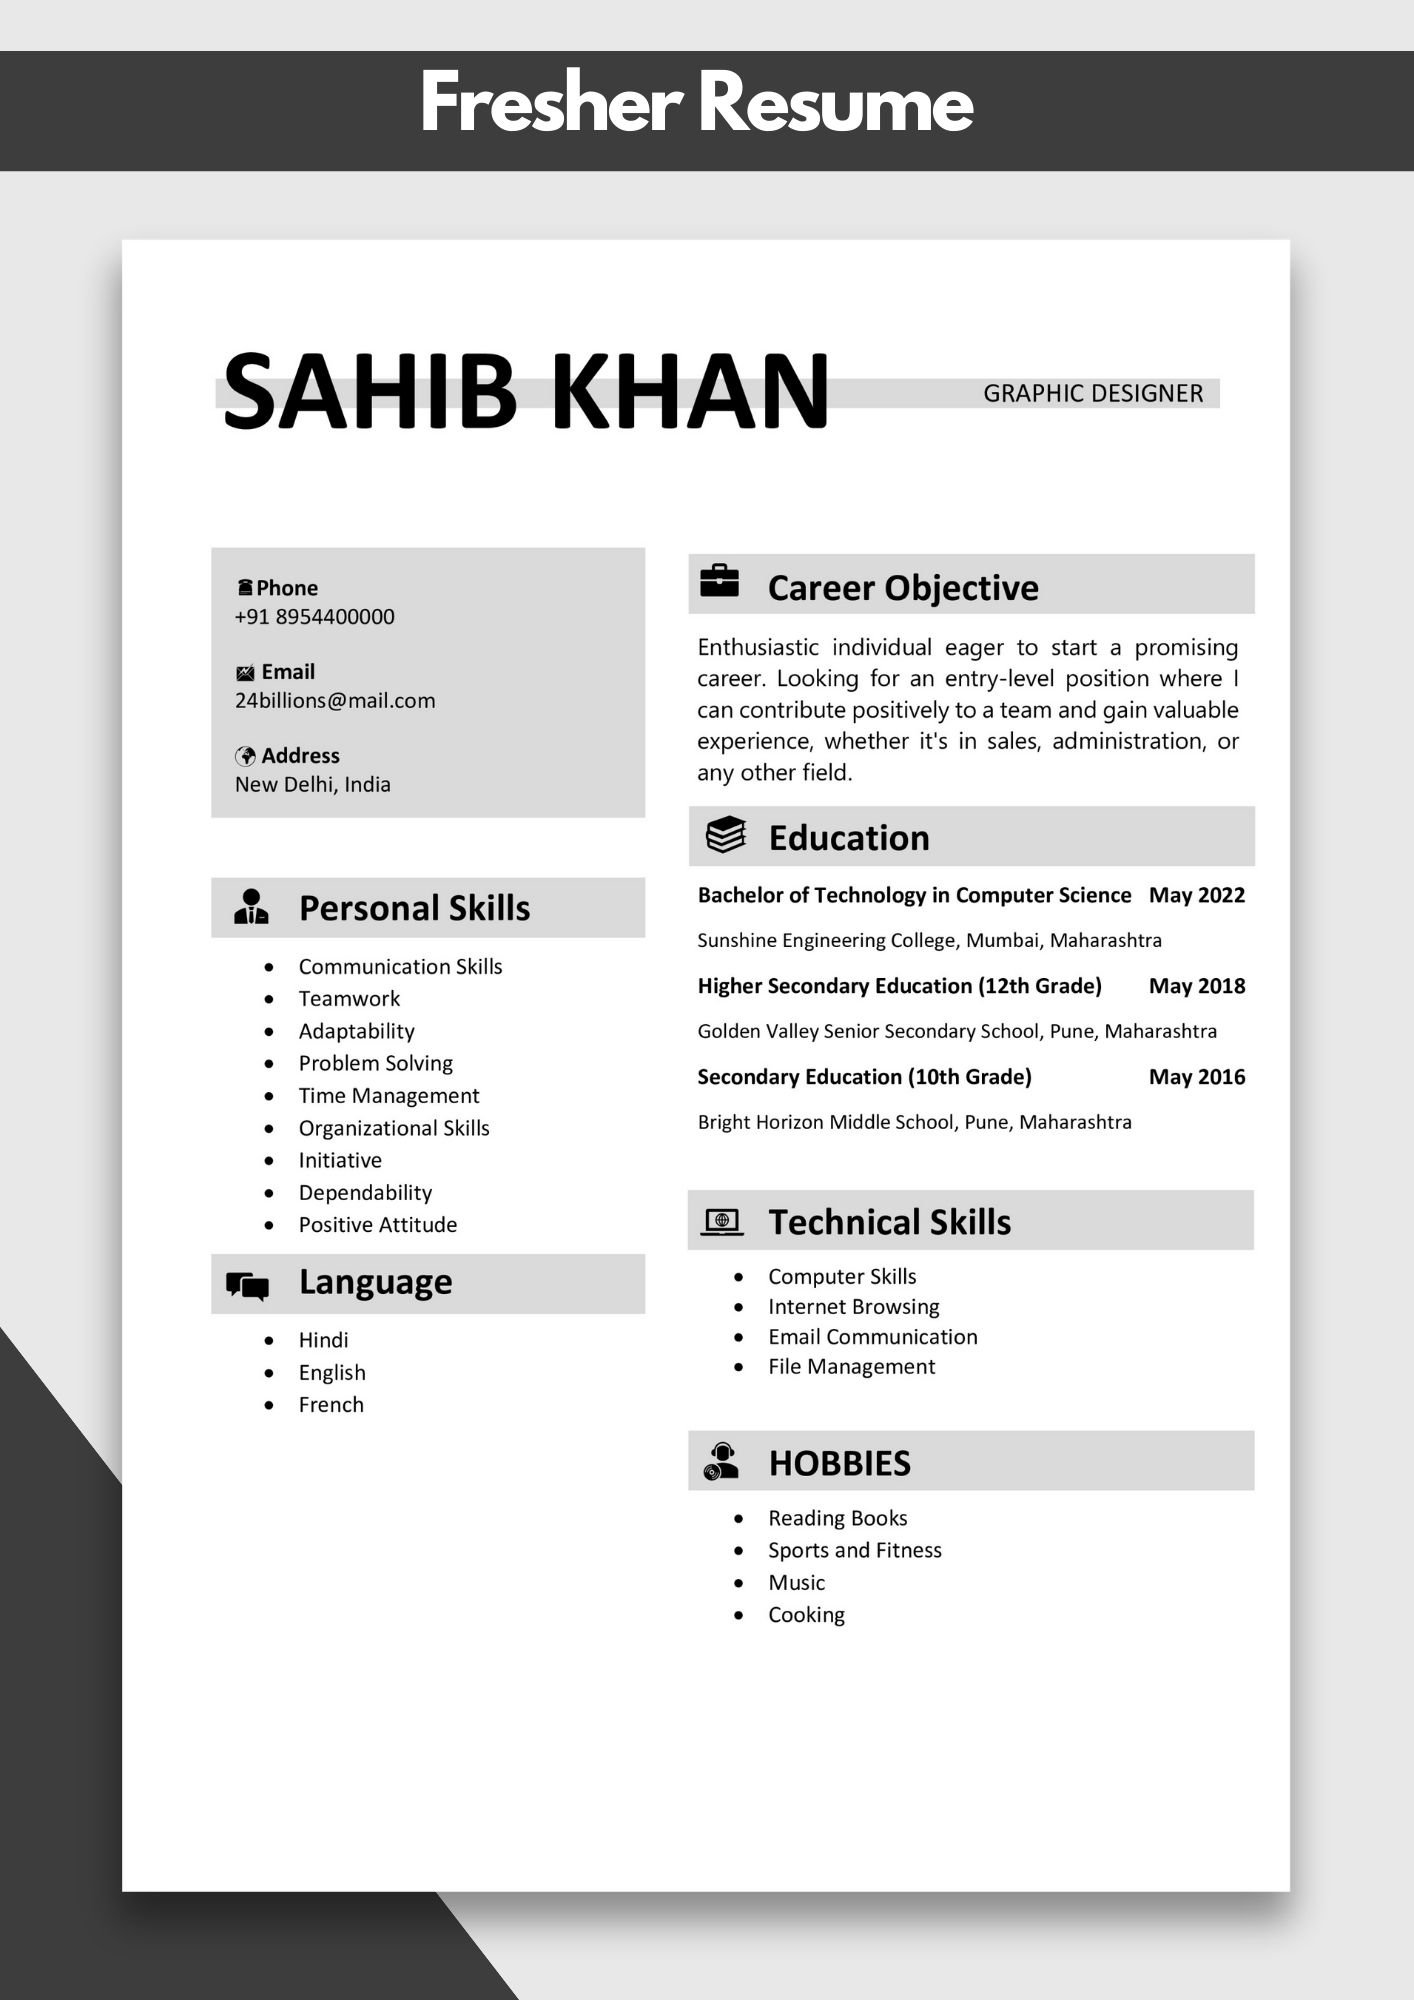 Resume for Fresher Sample | Fresher Resume Examples